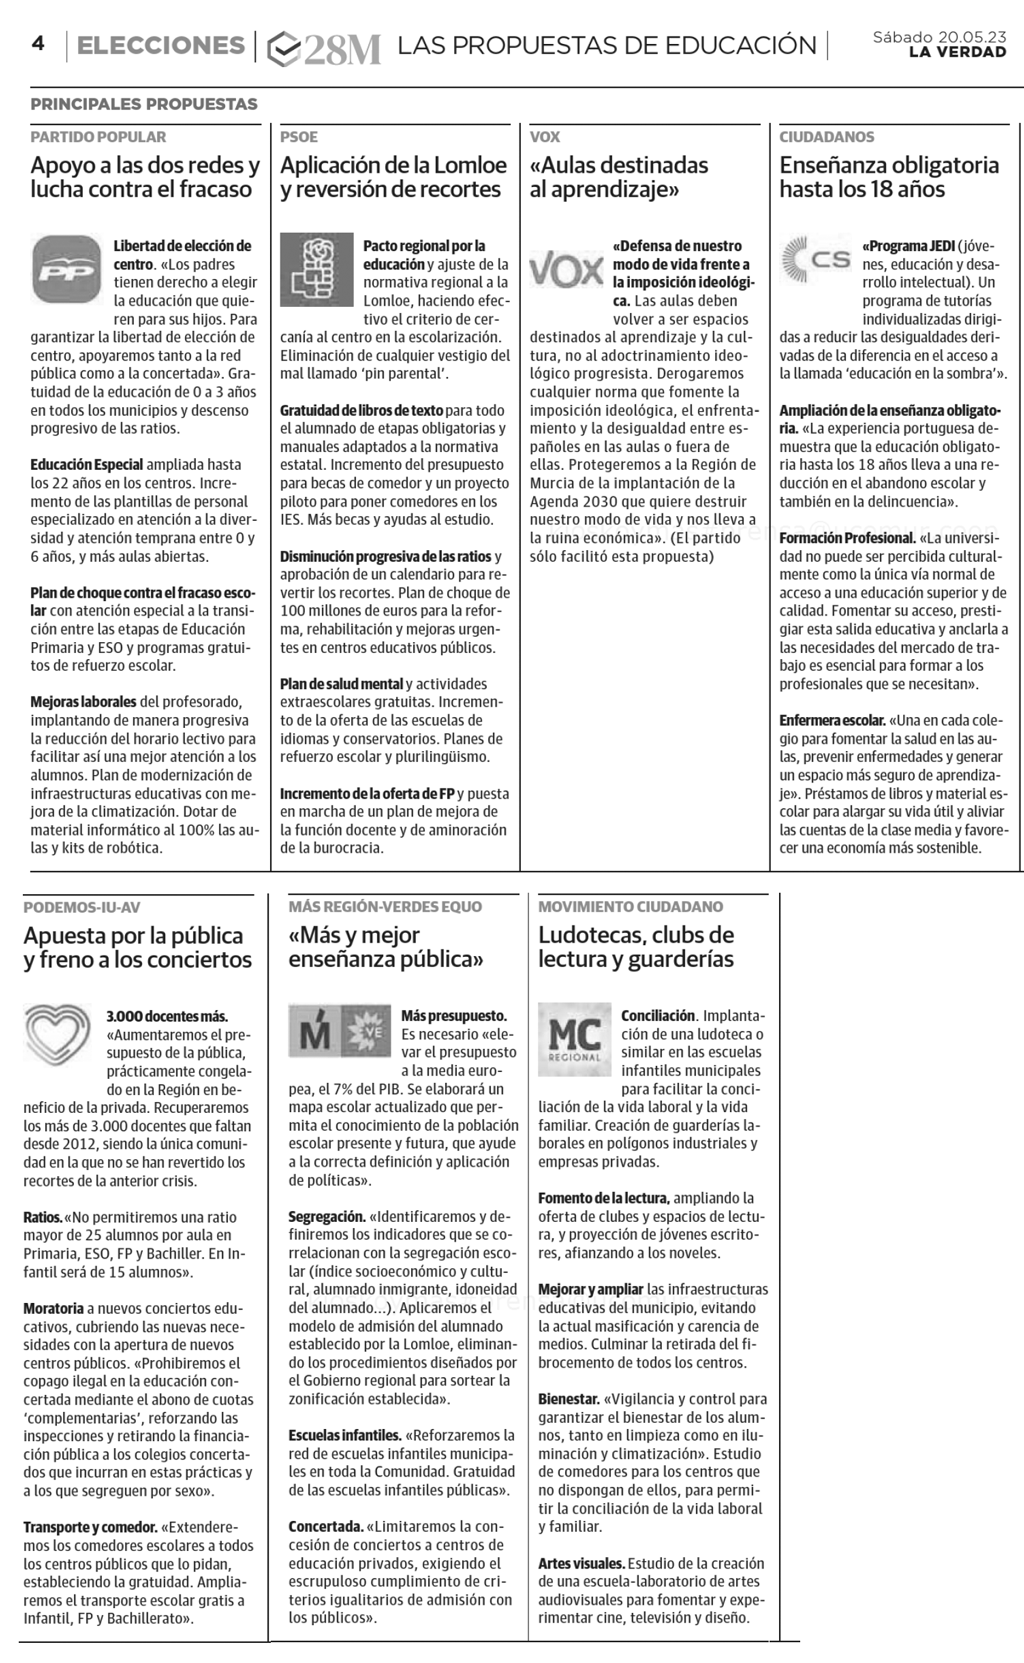 Estas son las principales propuestas, publicadas en el diario La Verdad este sábado 20 de mayo, que llevan en sus programas los diferentes partidos políticos que concurren a las elecciones municipales y autonómicas de la Región de Murcia.